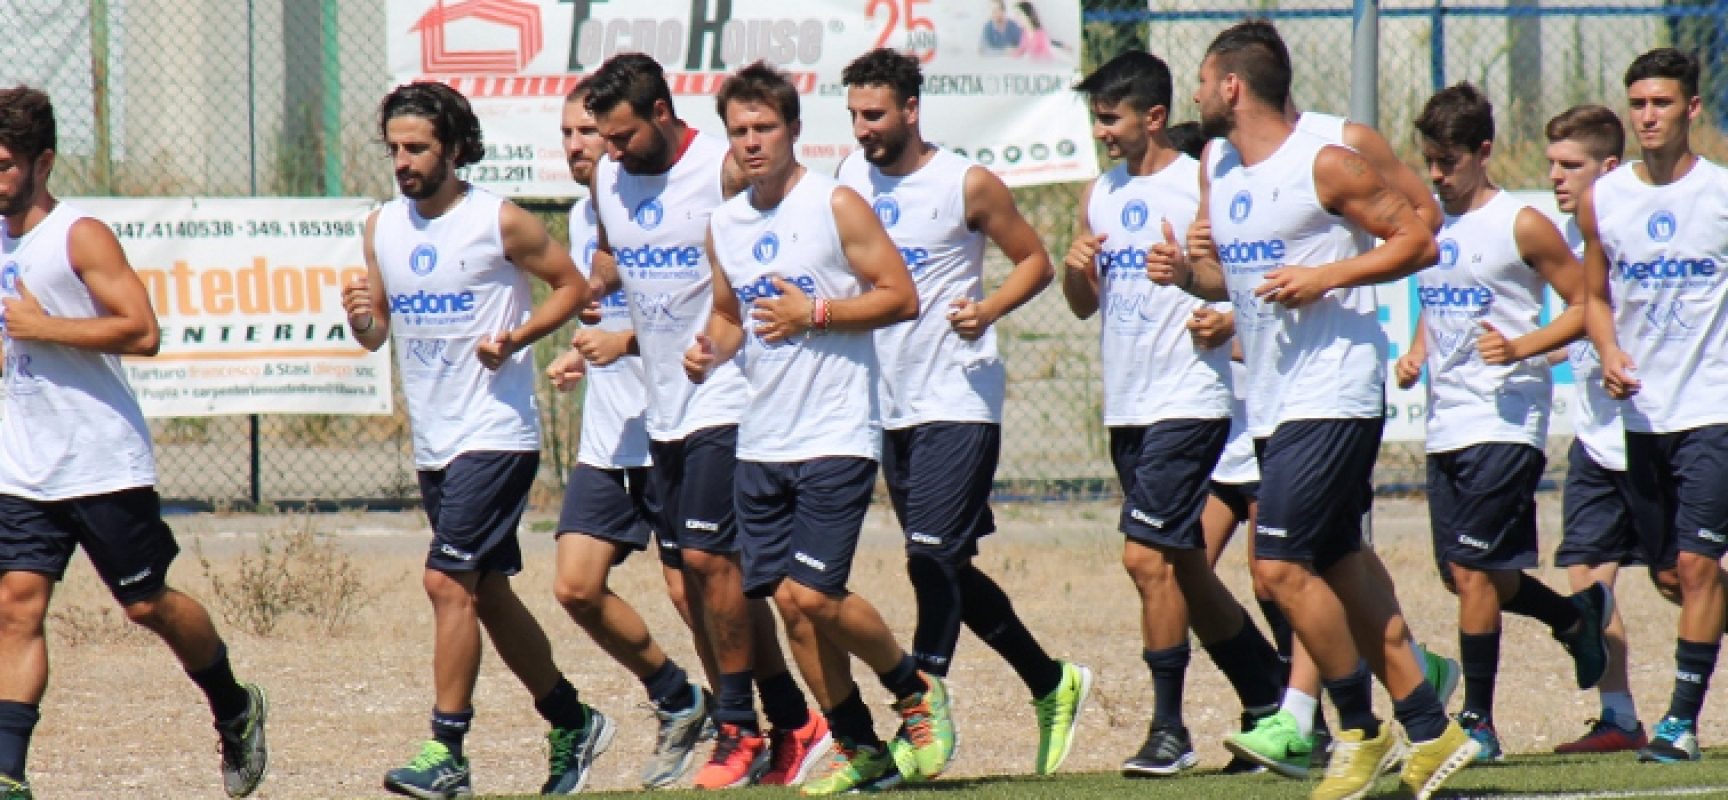 Unione Calcio al lavoro, il presidente Pedone: “Allestita una squadra che può far bene”/FOTO